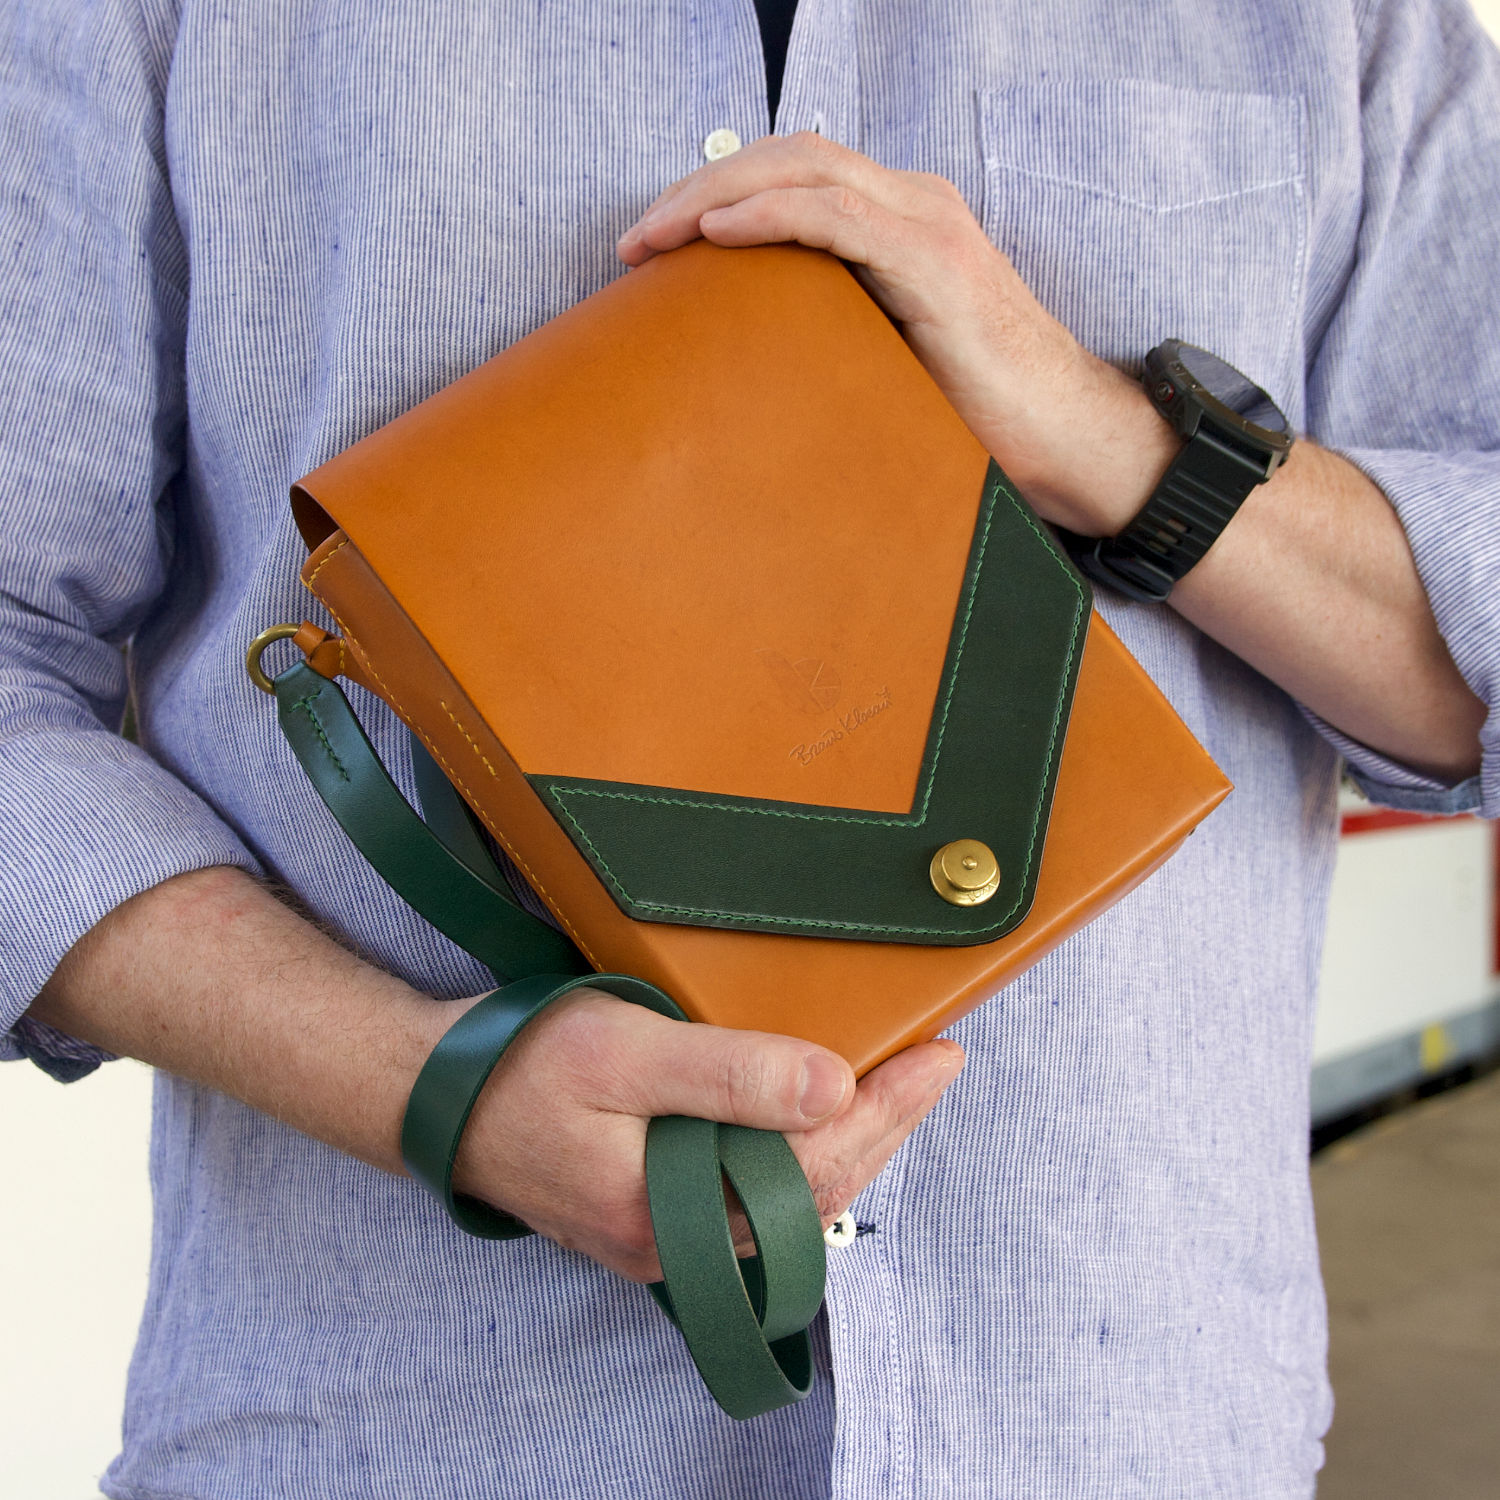 kožená messenger taška s loxx cvokom držaná v rukách